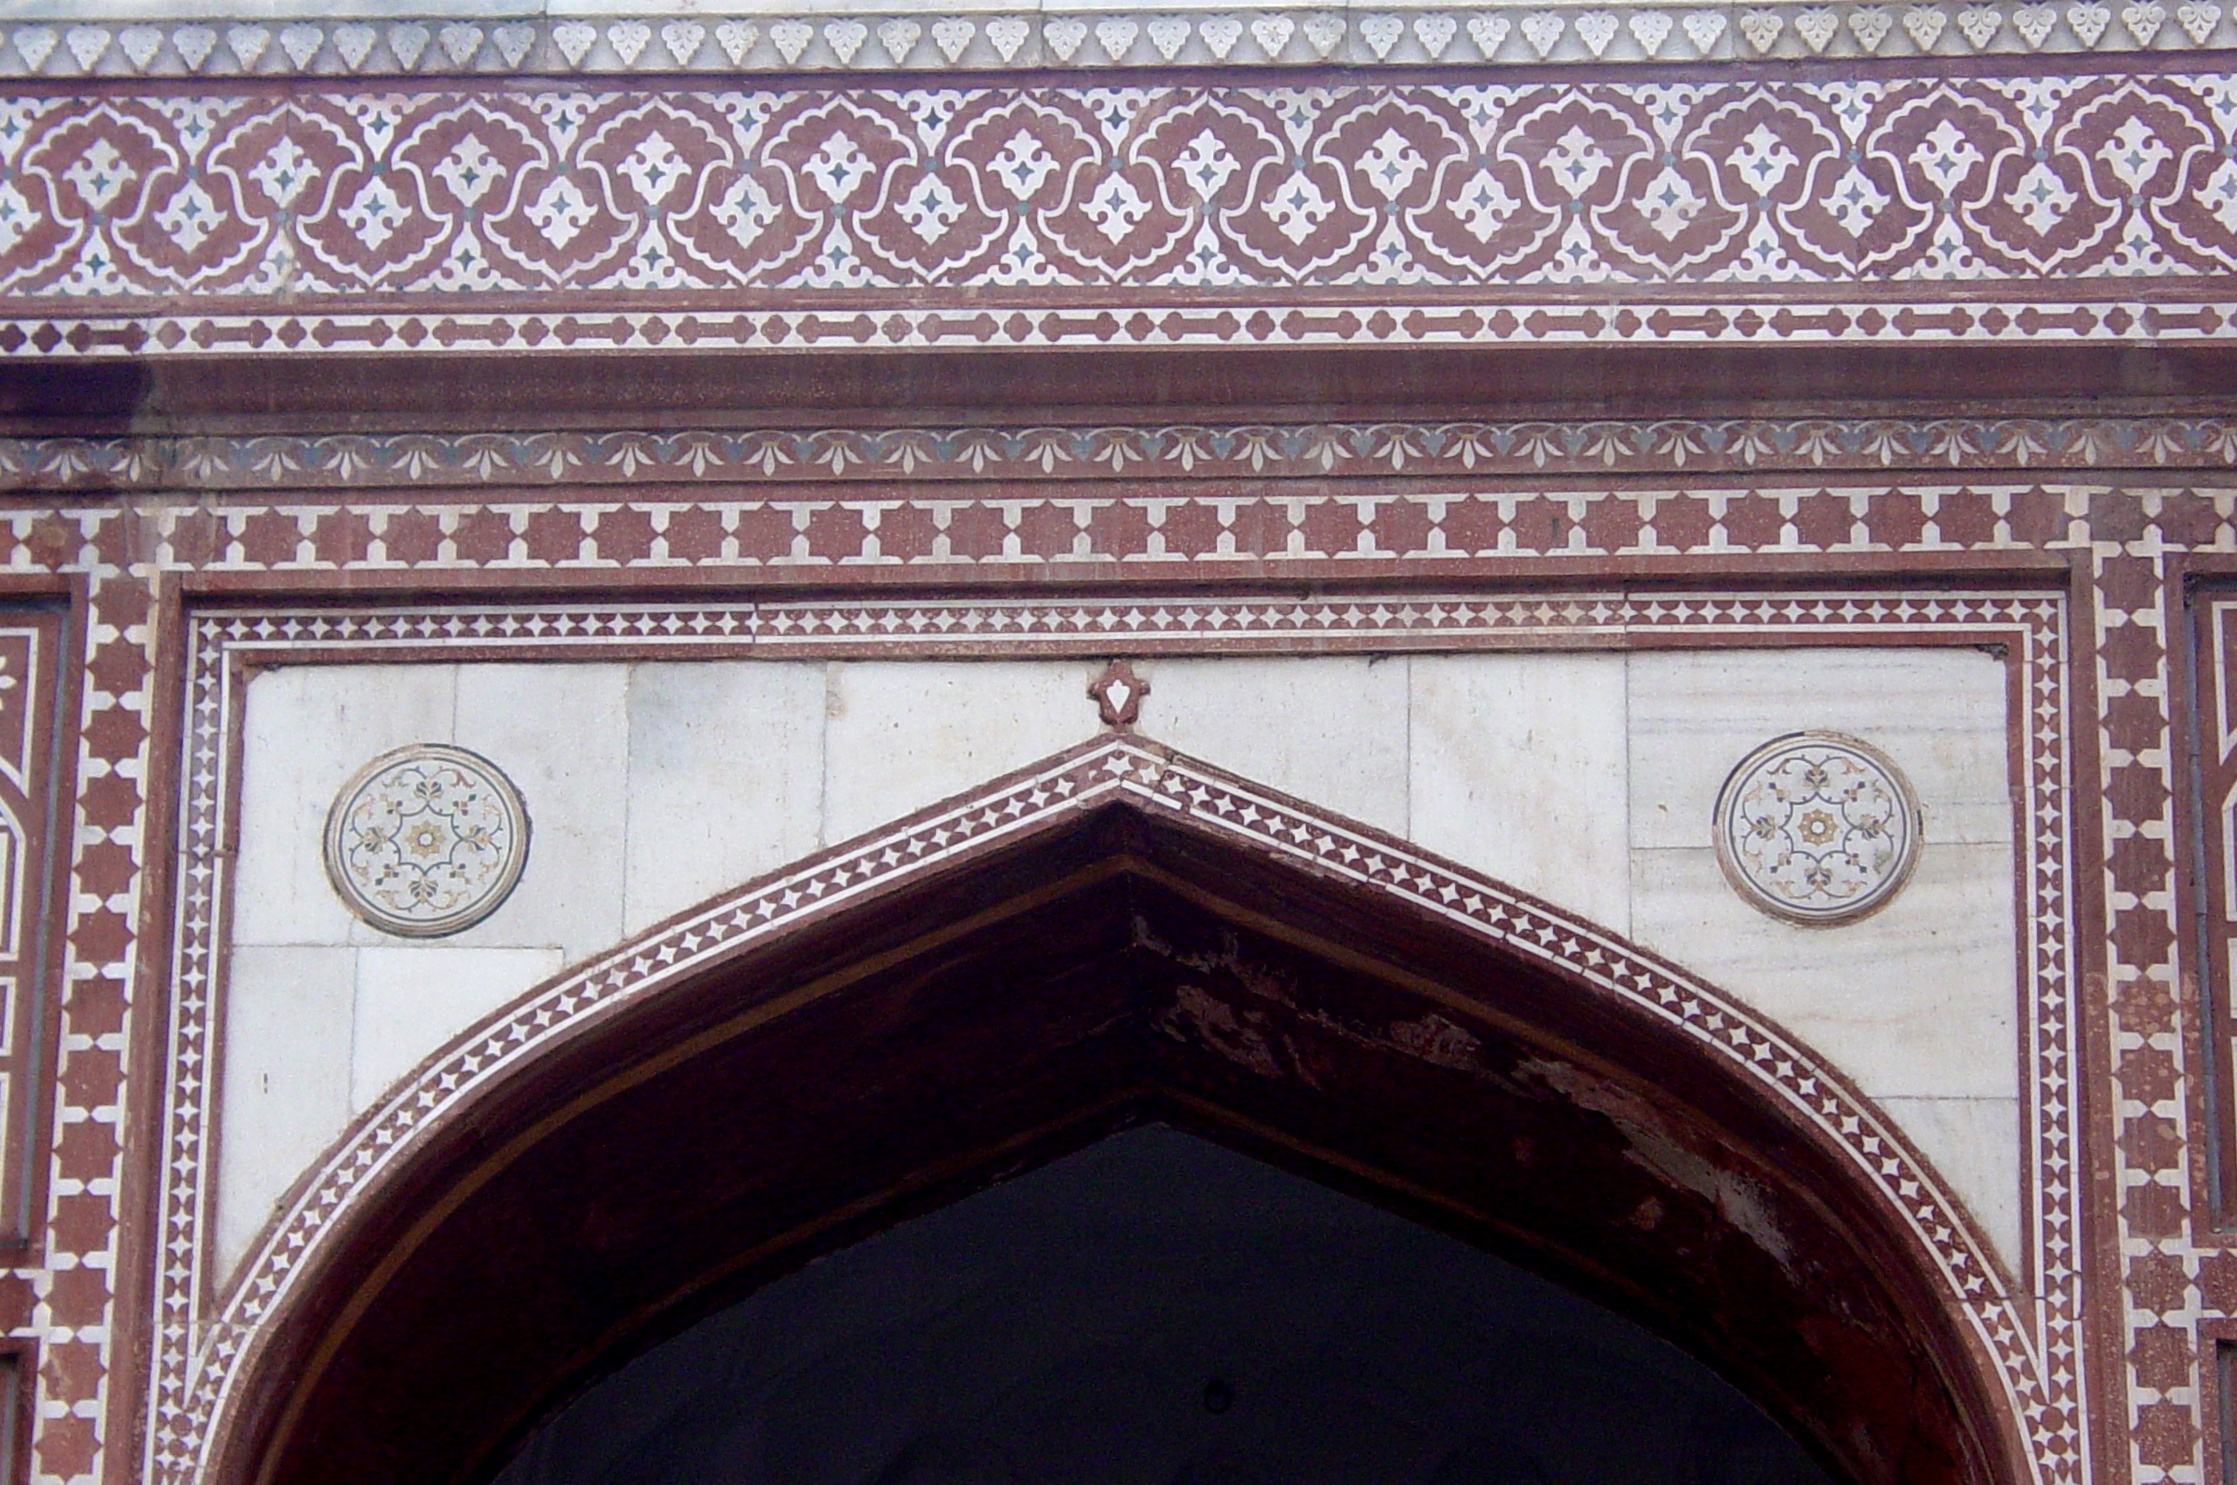 Badshahi Mosque wall detail